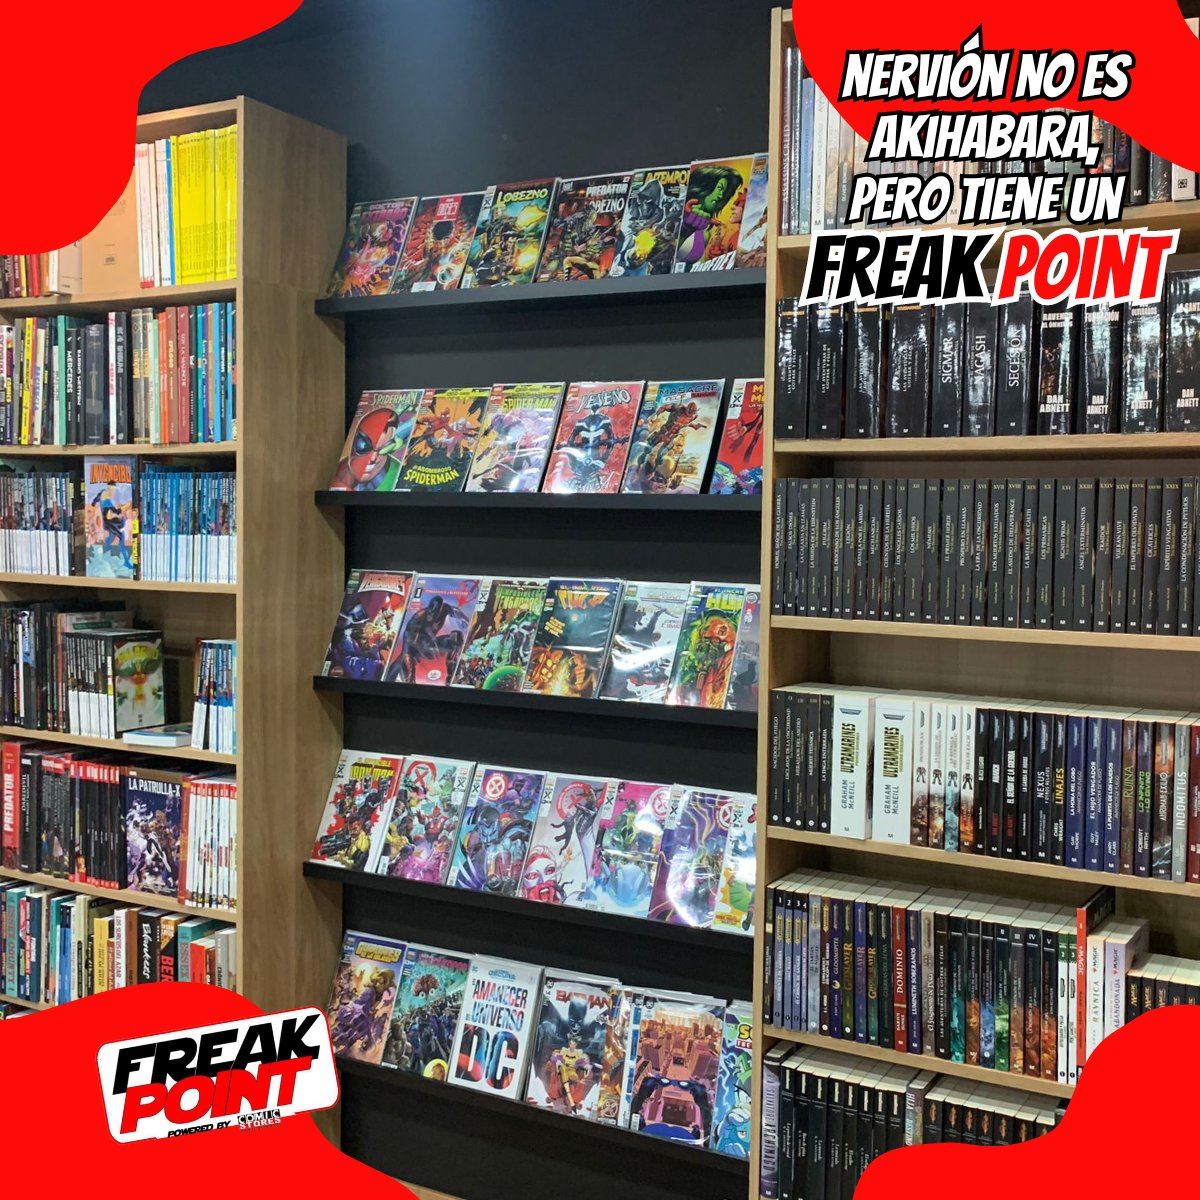 Con la llegada de Freak Point al barrio de Nervión, inauguramos en Sevilla una tienda que os va a encantar a los seguidores de la cultura geek: comics y merchan de tus sagas favoritas

#CulturaGeek #Comic #Manga #juegosdemesa
#merchandising